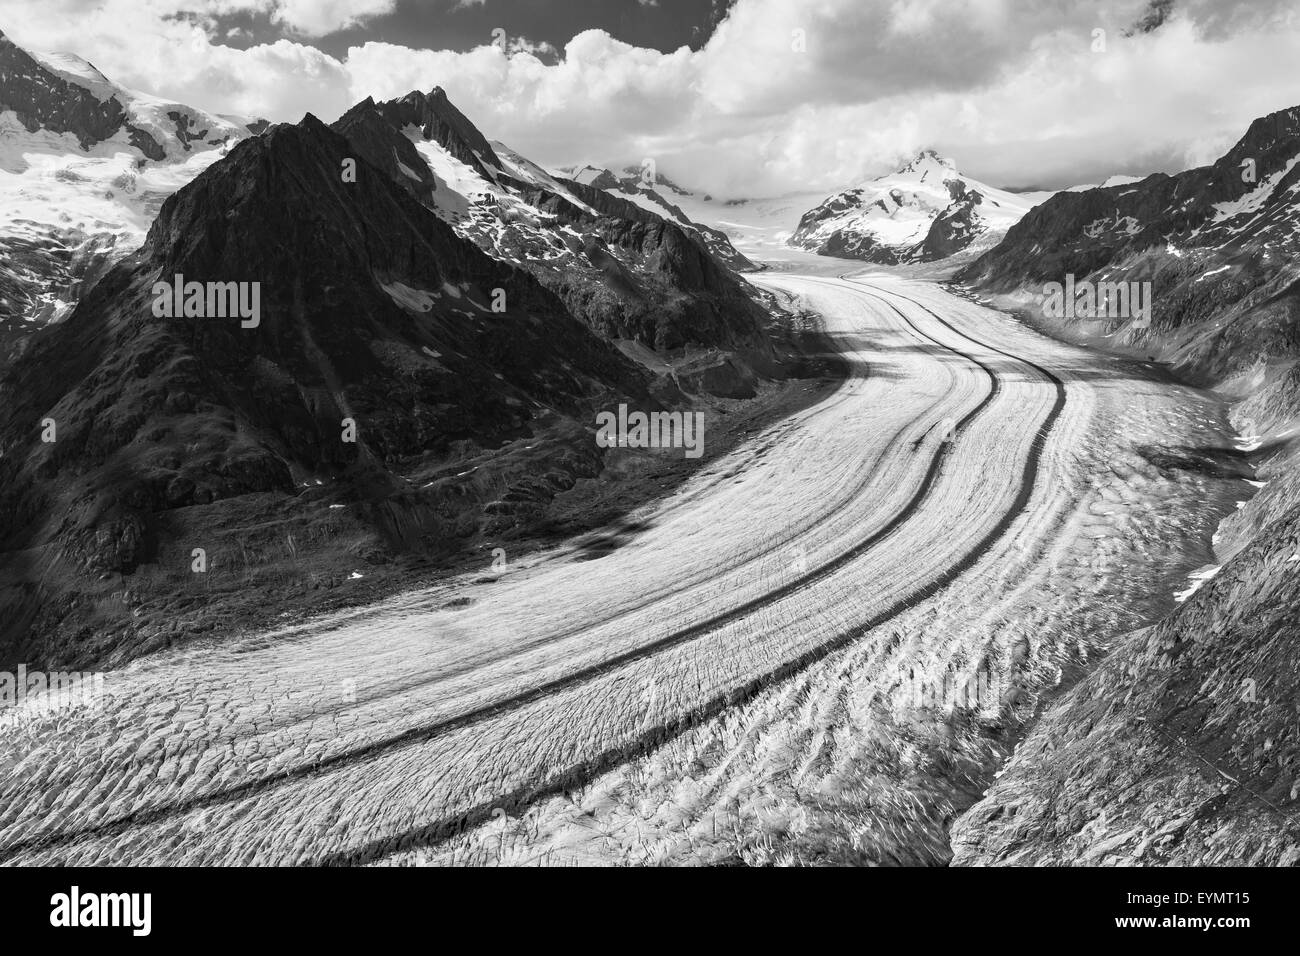 Il ghiacciaio Aletsch. Aletschgletscher. Alpi Bernesi orientali nel cantone svizzero del Vallese. Svizzera. Paesaggio di montagna bianco nero Foto Stock